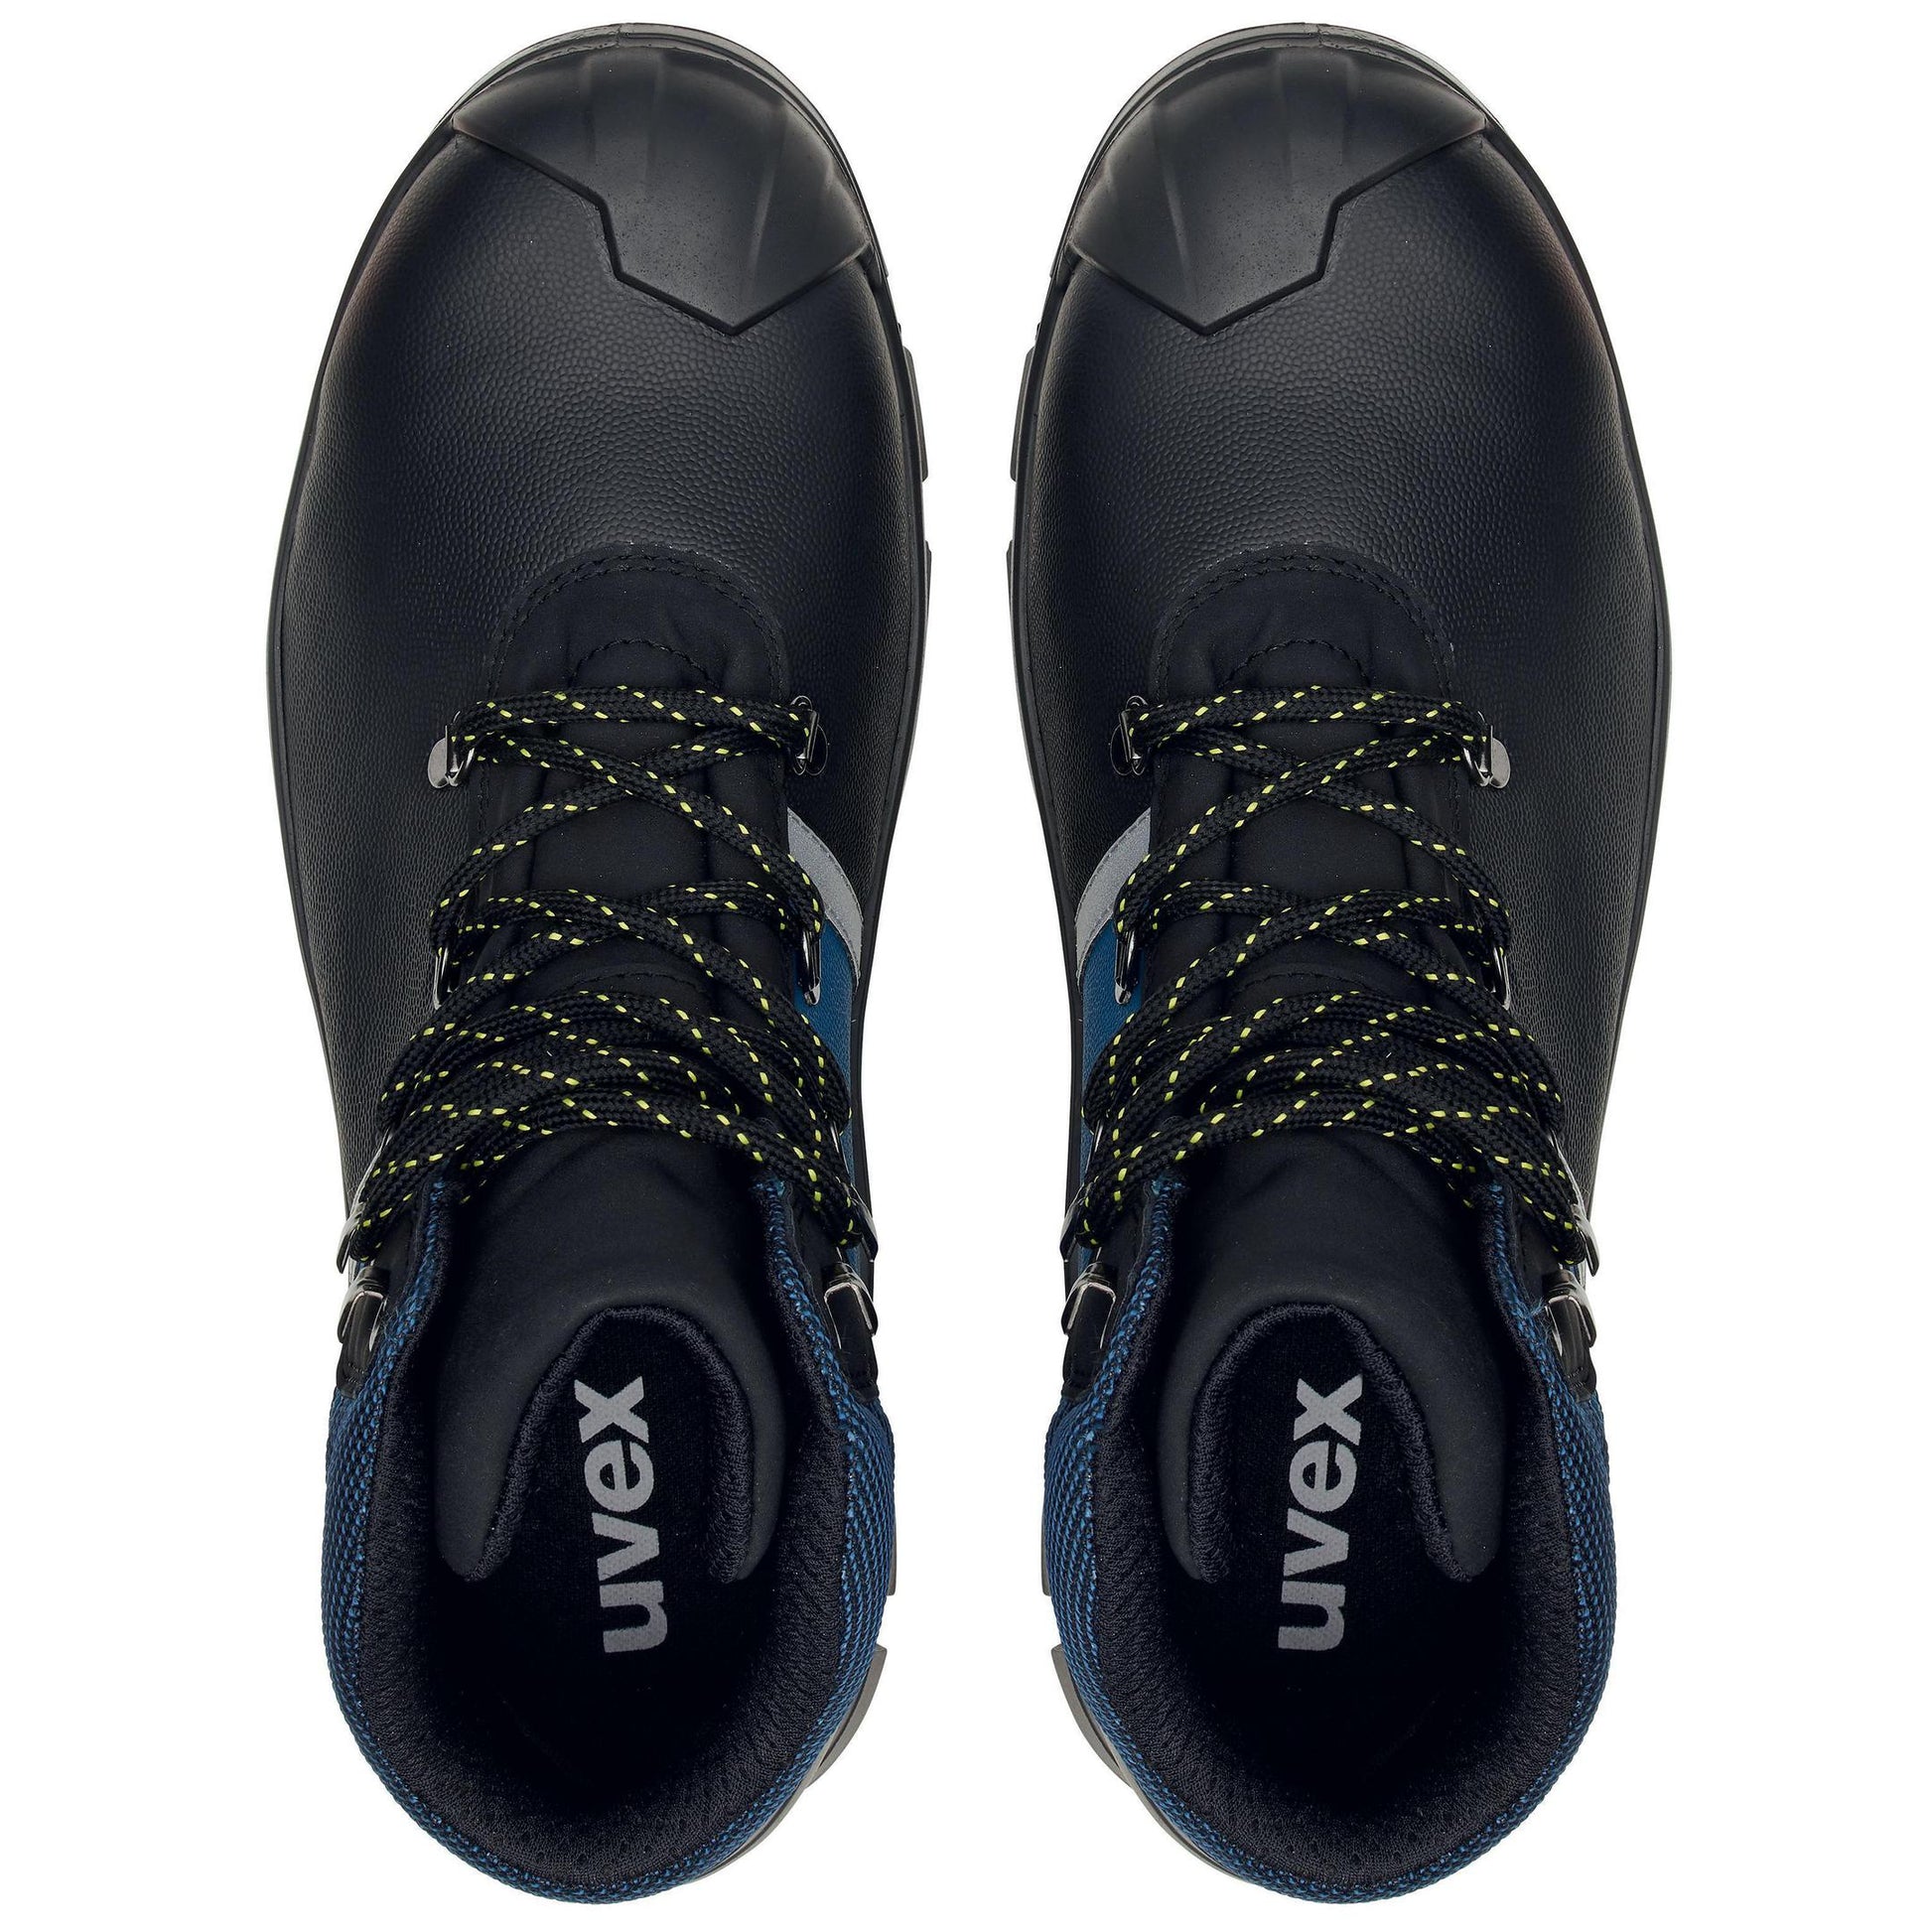 Uvex Stiefel 65132 schwarz/blau S3 Weite 11 ansicht beide Schuhe